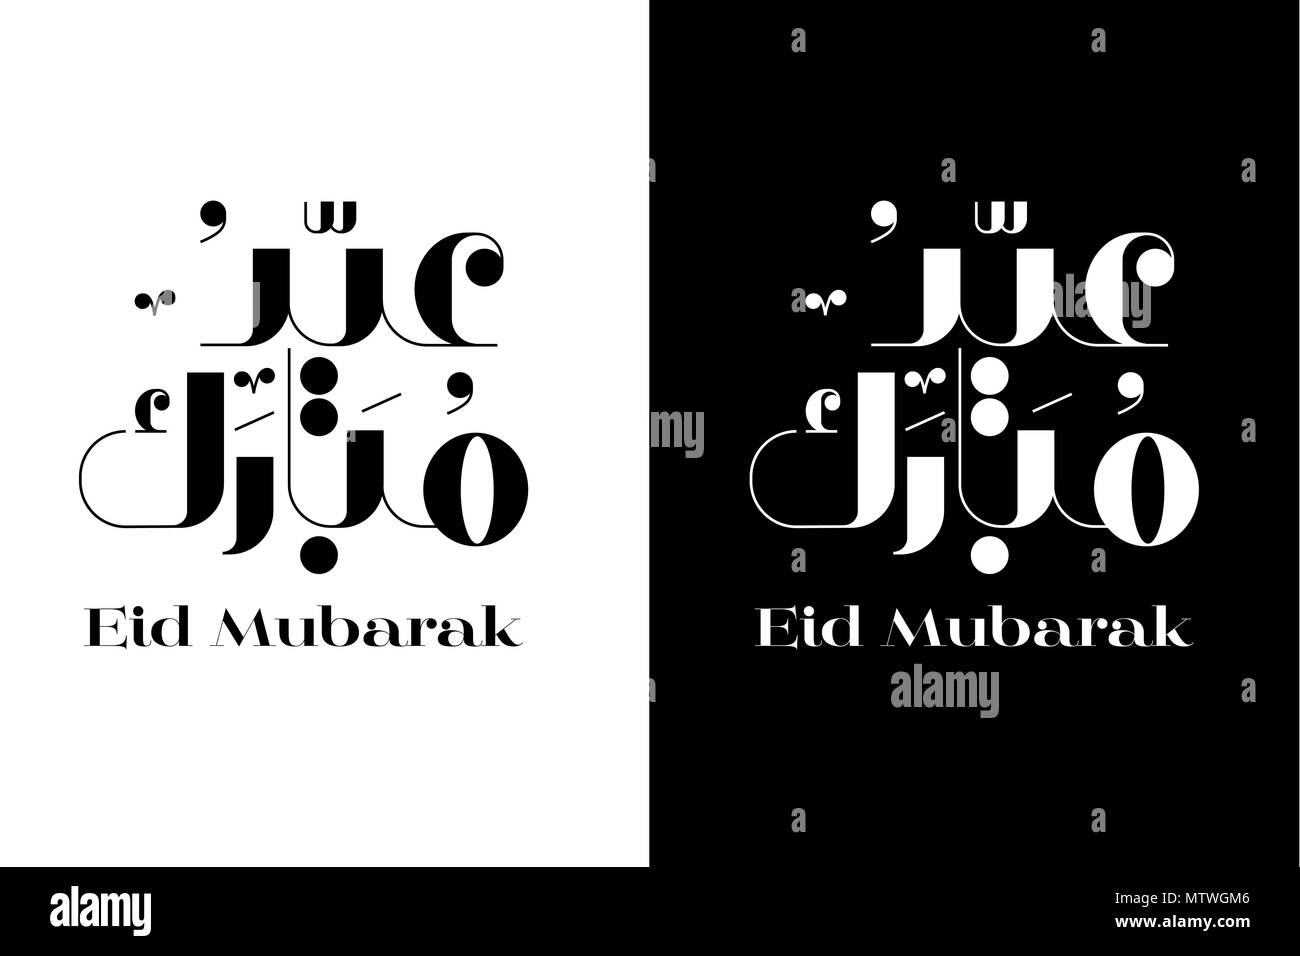 Eid Mubarak Vector Typographie, fond noir et blanc, la calligraphie arabe Vector Illustration. Illustration de Vecteur